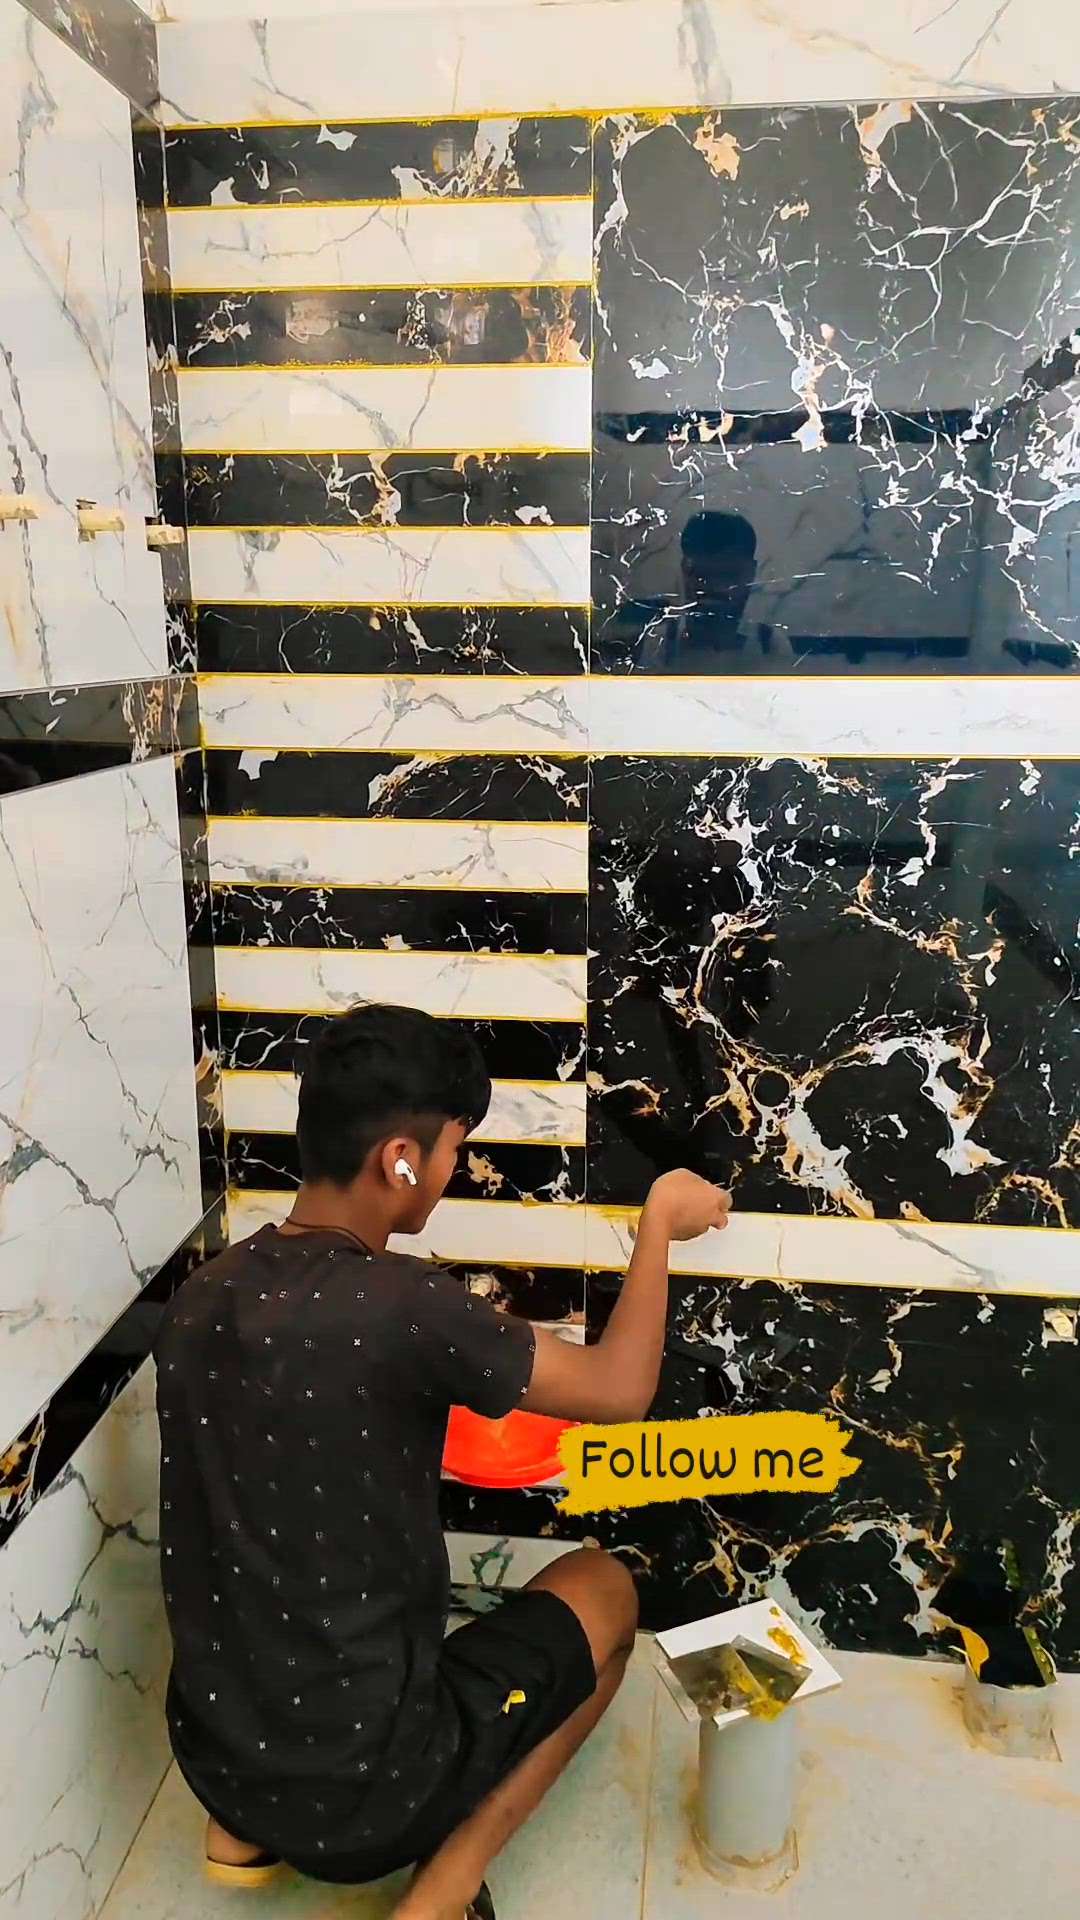 #BathroomTIles  #BathroomStorage  #GraniteFloors  #jaipurcity  #jaipur  #jaipurjewellery  #FlooringTiles  #KitchenTiles